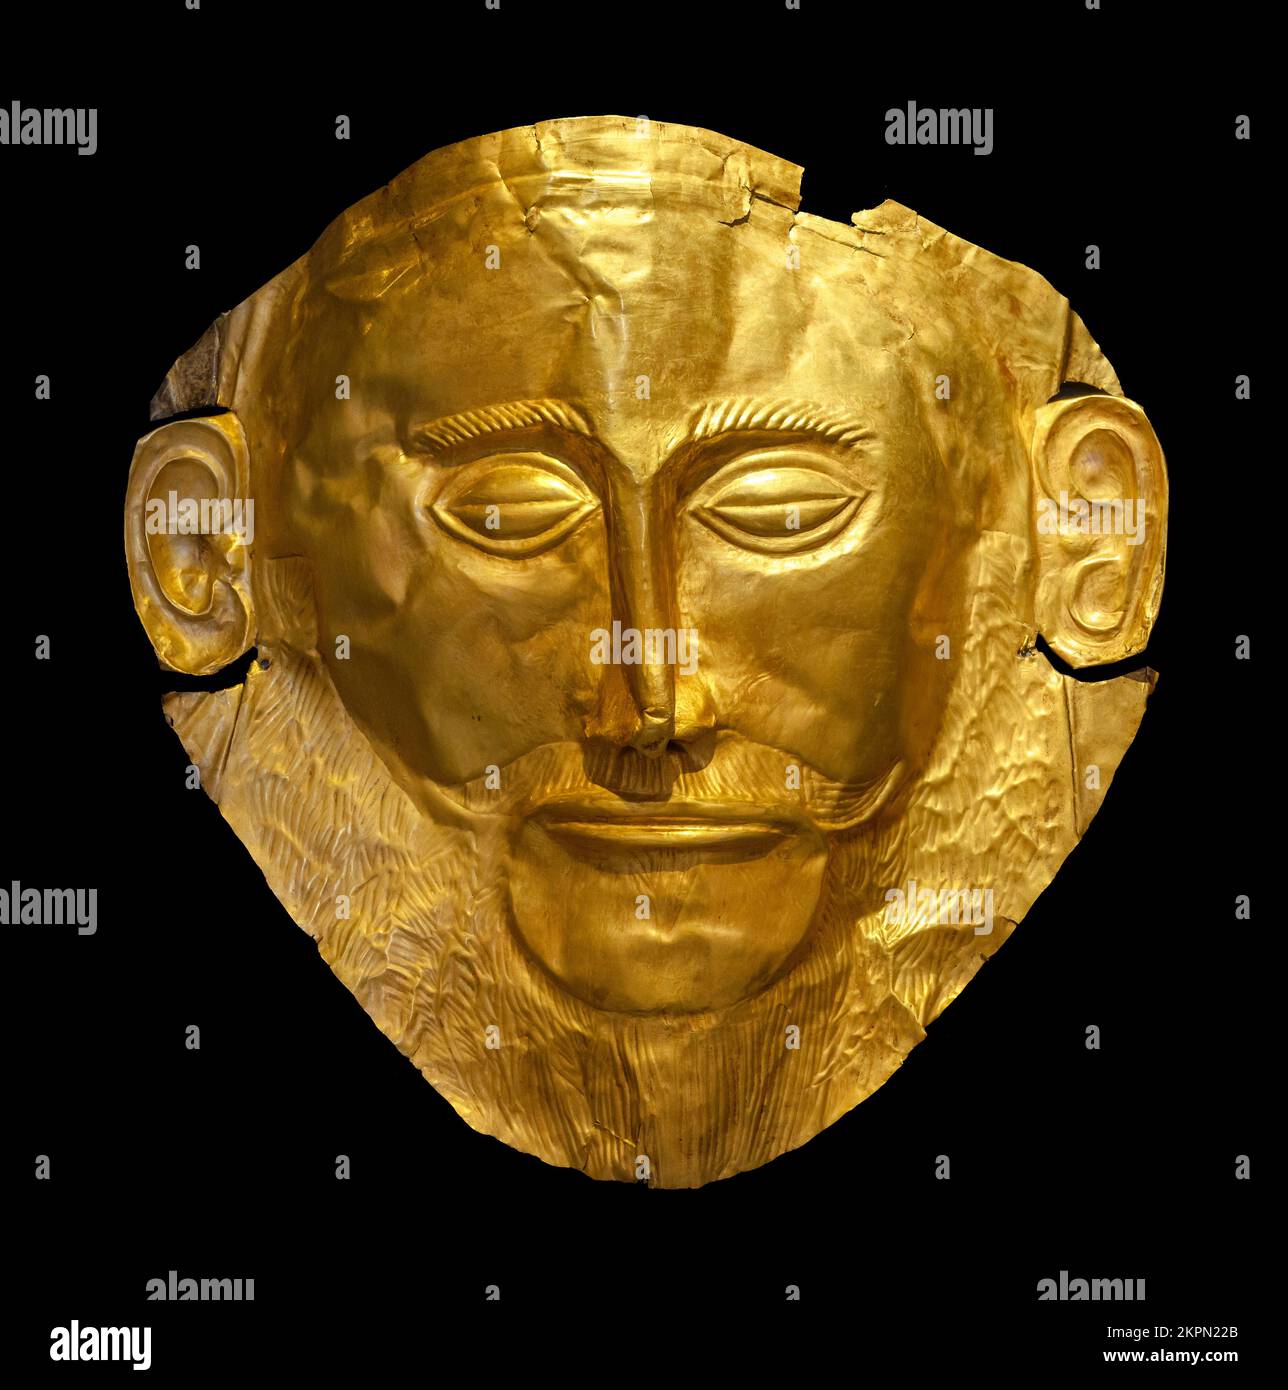 Le masque d'Agamemnon, un masque funéraire en or de Mycènes, 16e siècle av. J.-C., Musée archéologique national, Athènes, Grèce Banque D'Images